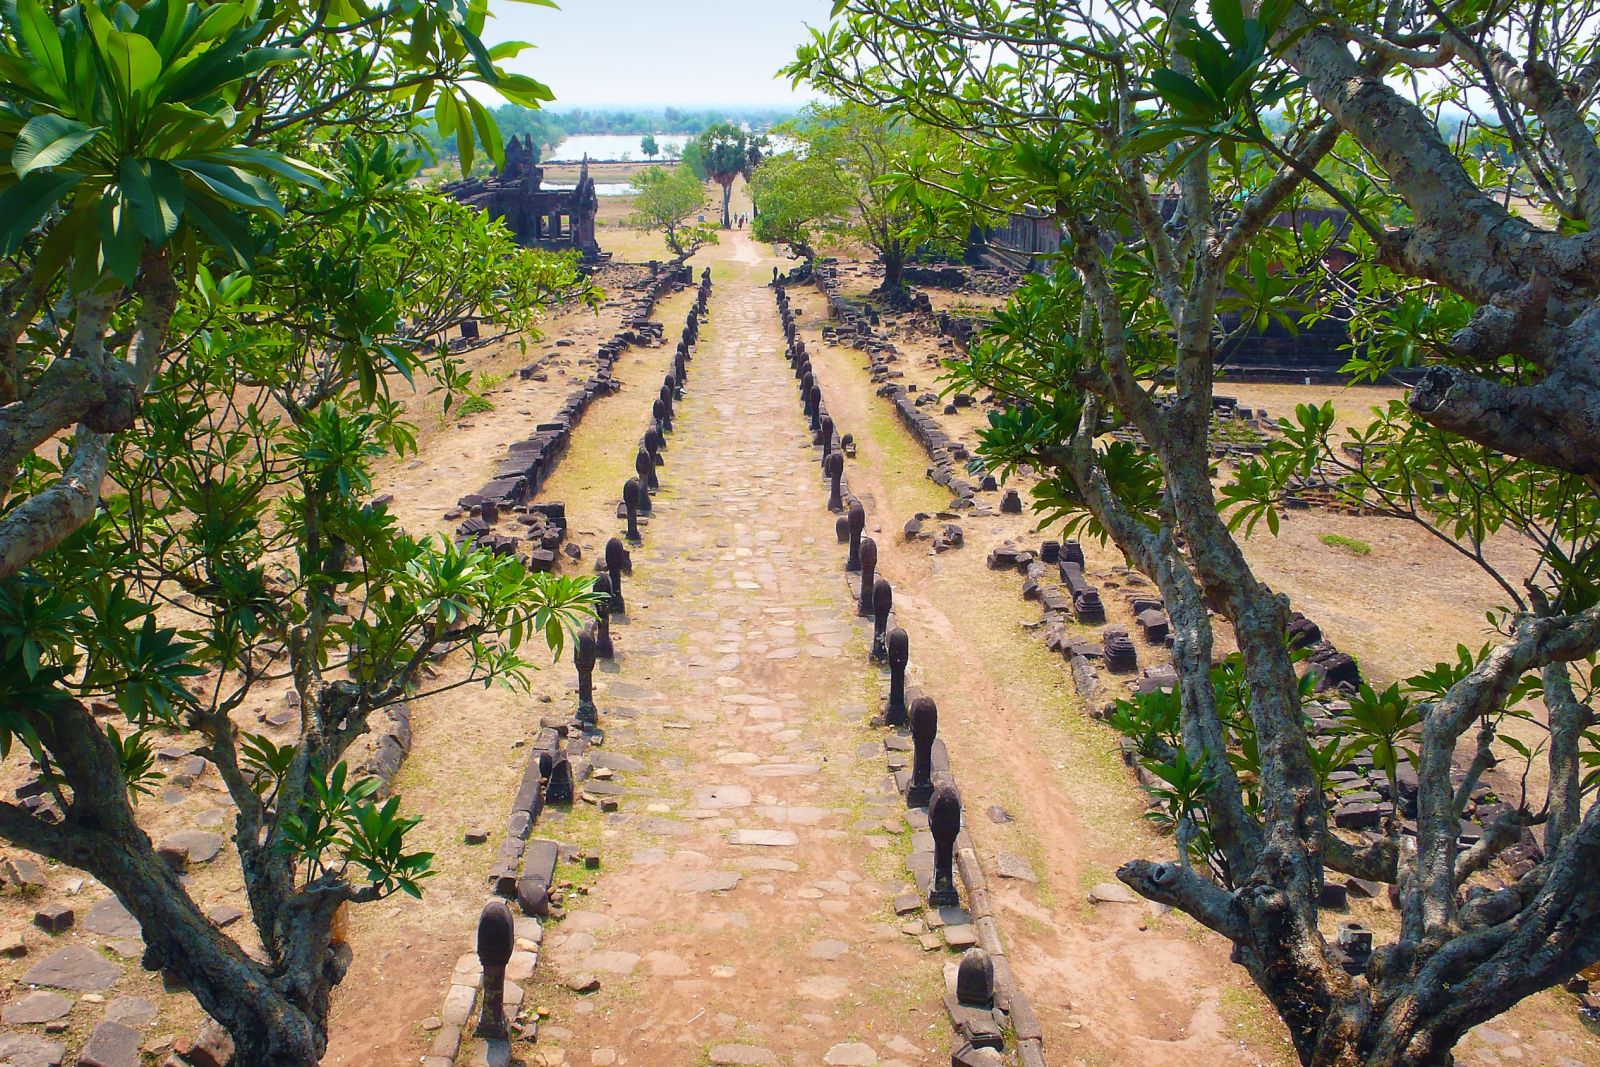 Frangipanibäume neigen sich über die Galerie, die zum Tempel von Wat Phou führt